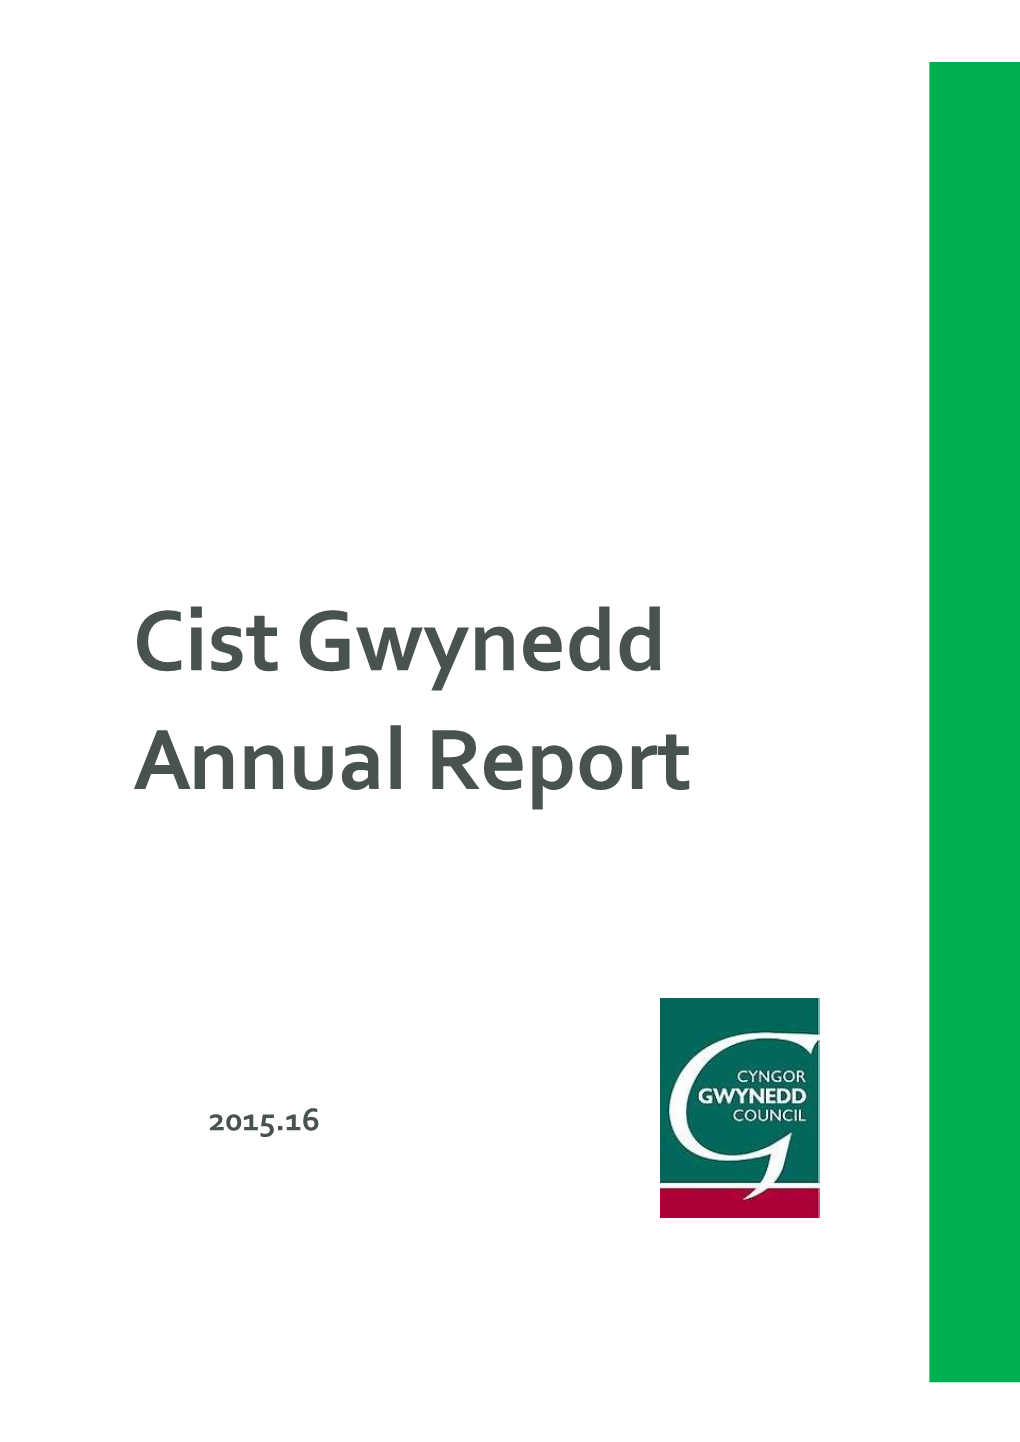 Cist Gwynedd Annual Report